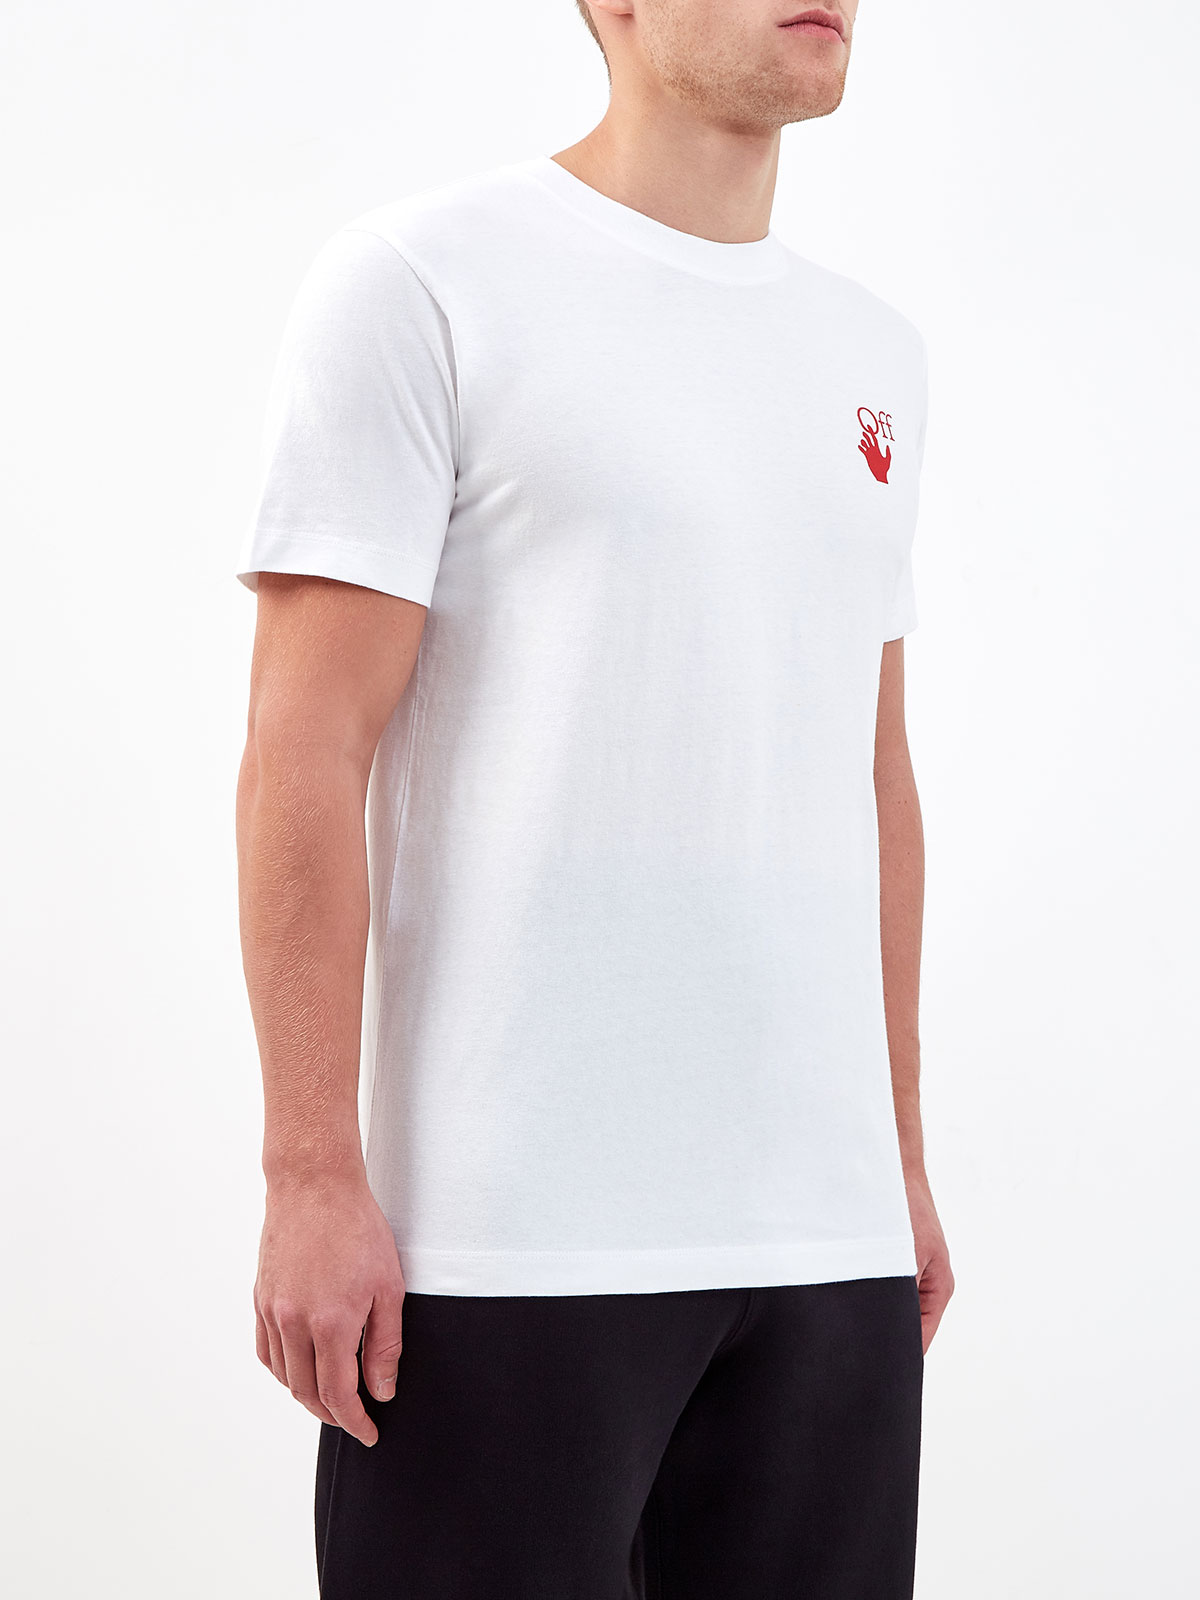 Белая футболка из джерси с макро-принтом Arrows OFF-WHITE, цвет белый, размер M;L;2XL - фото 3